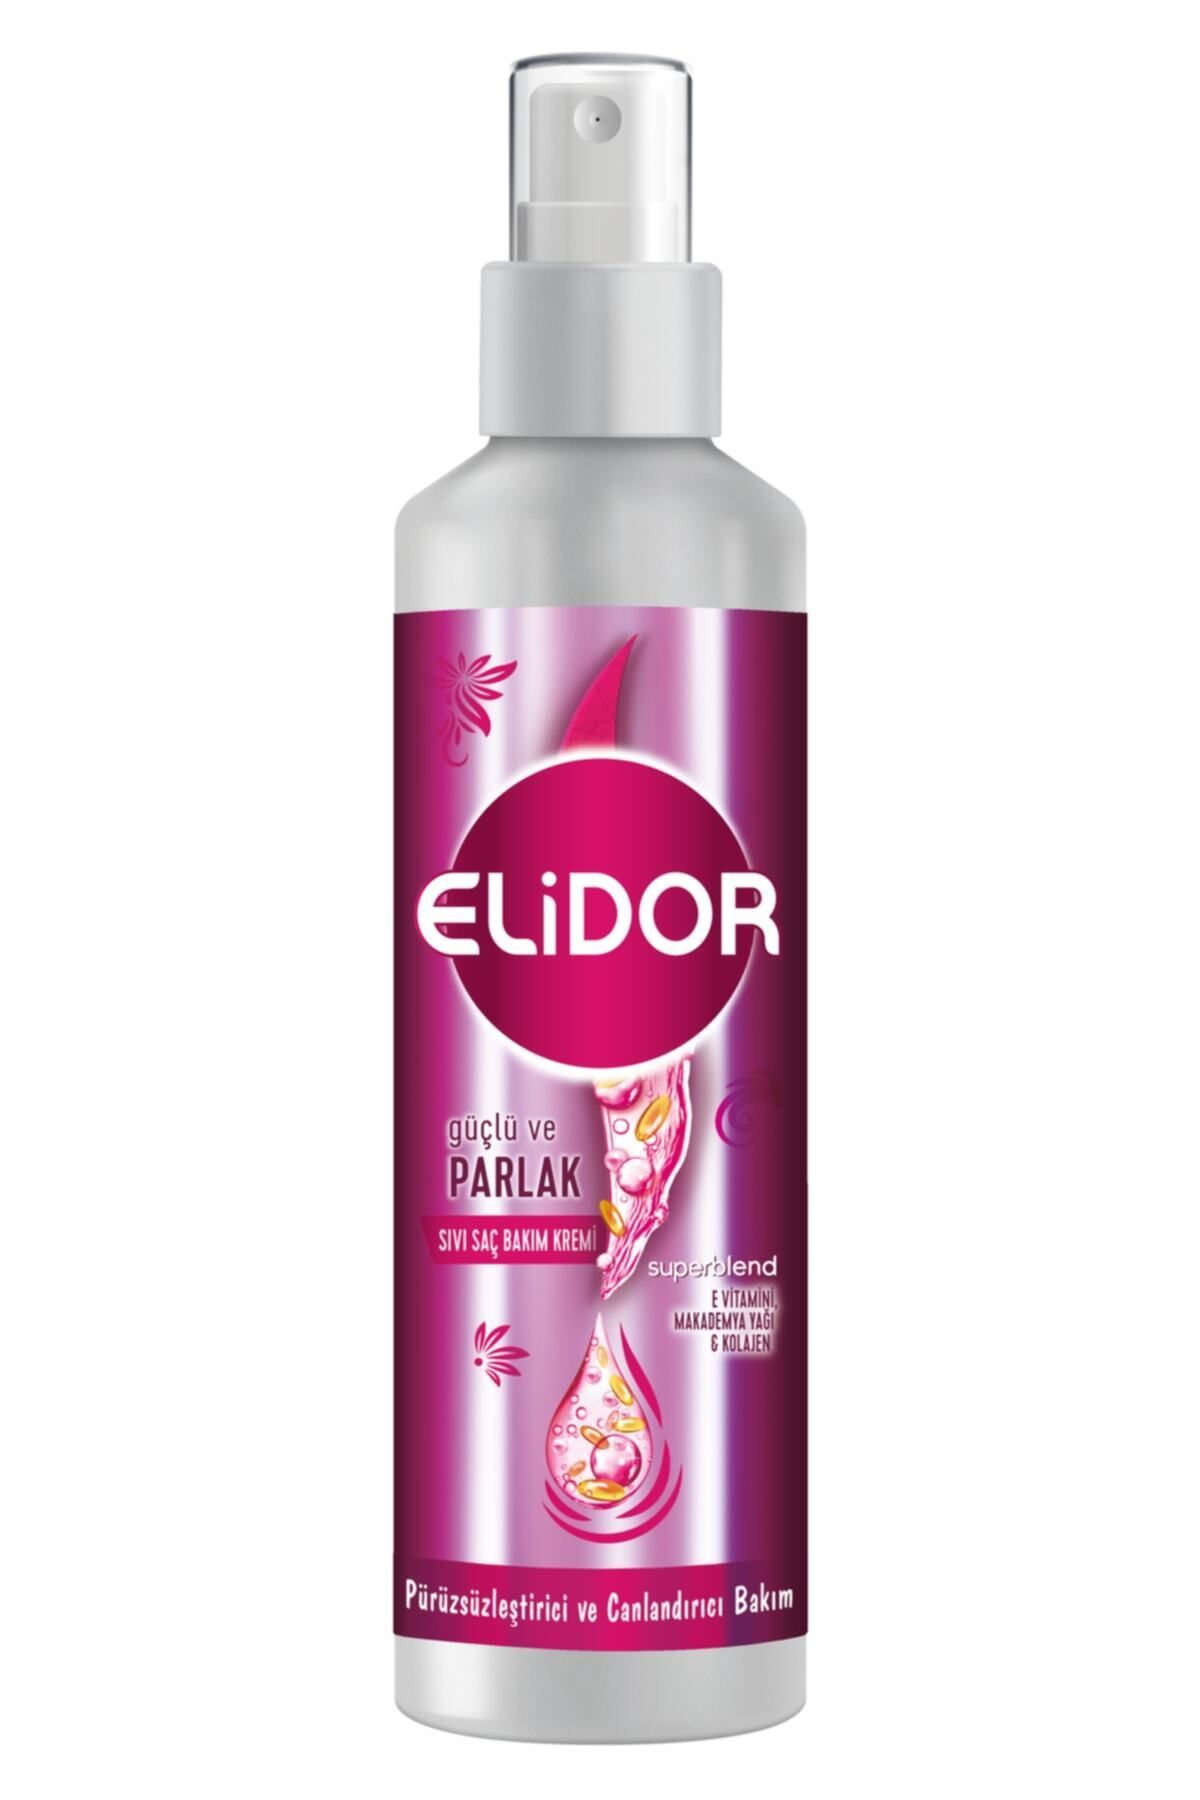 Elidor Superblend Sıvı Saç Bakım Kremi Güçlü ve Parlak Pürüzsüzleştirici ve Canlandırıcı 200 ml